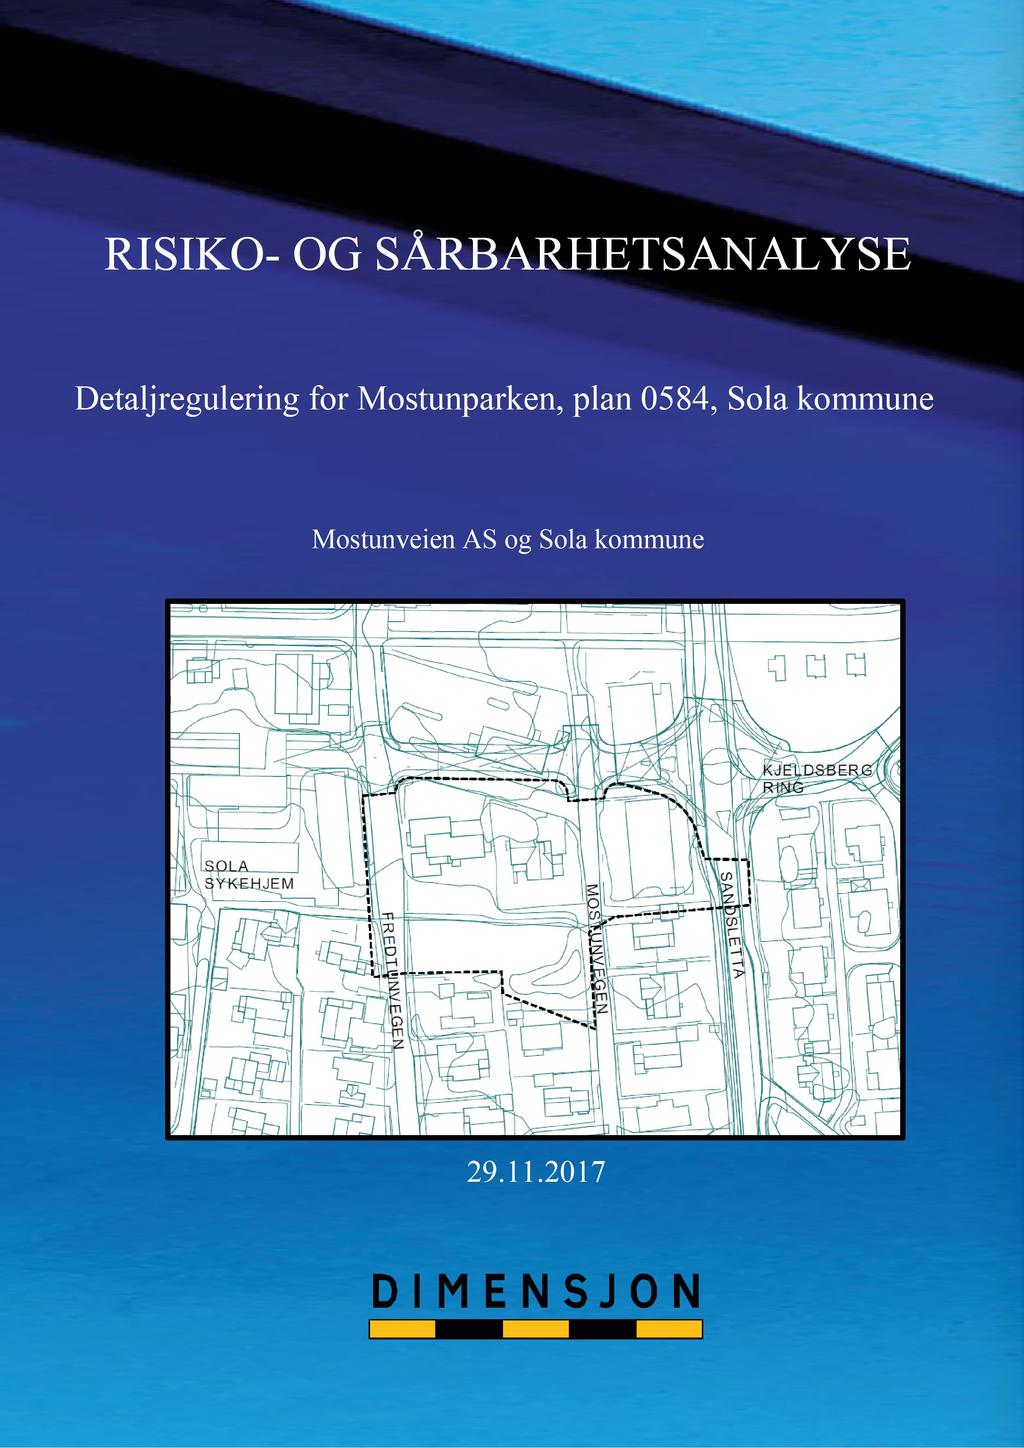 RISIKO - OG SÅRBARHETS ANALYS E Detaljregulering for Mostunparken, plan 0584, Sola kommune Mostunve i en AS og Sola